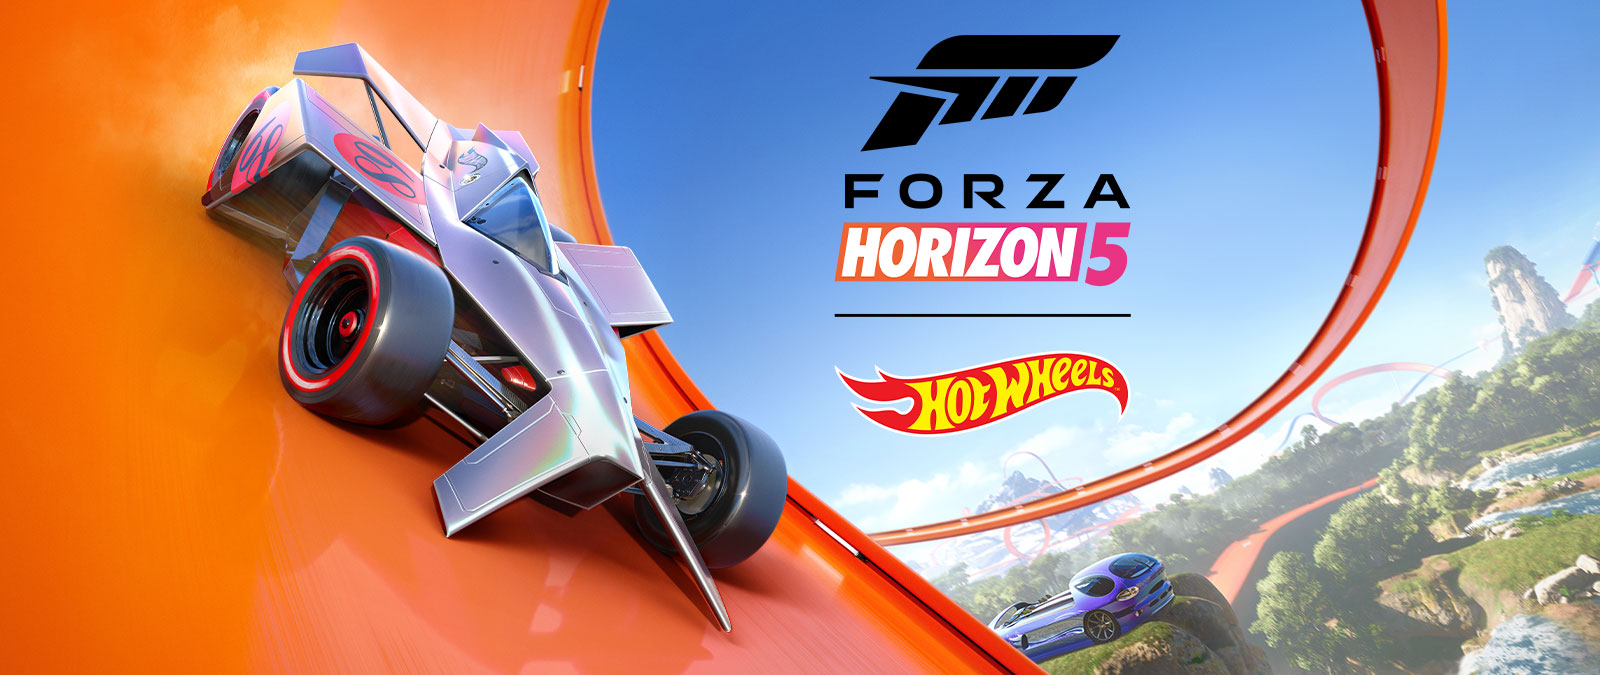 Forza Horizon 5, Hot Wheels, egy autó száguld egy Hot Wheels-pályahurokban.